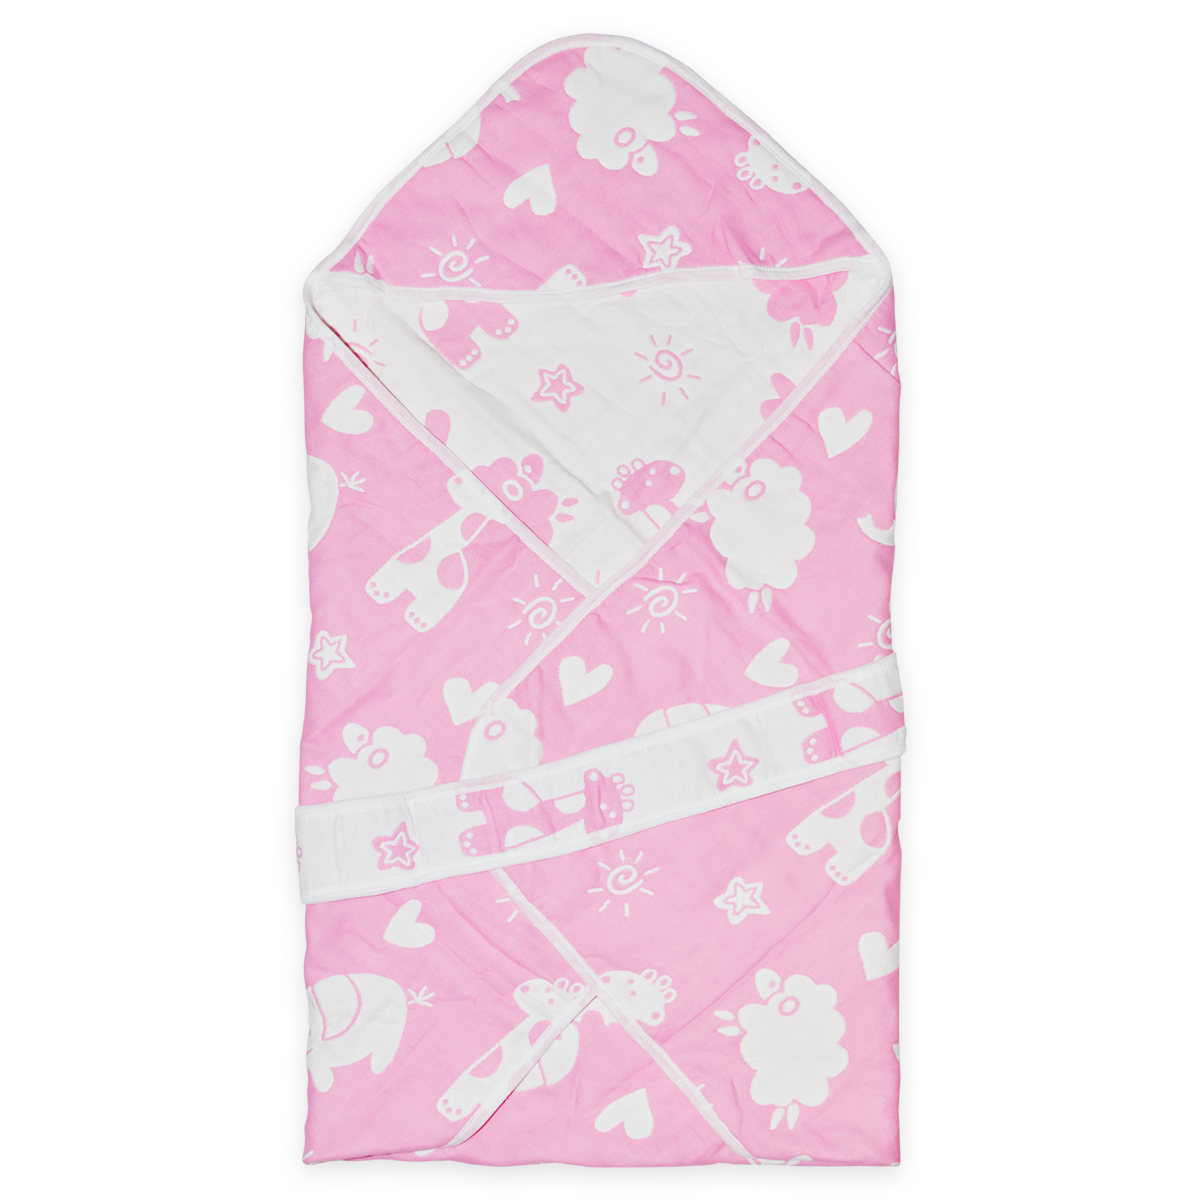 Одеяло-конверт Baby Fox Животные, весеннее, розовое, 90х90 см плед трия одеяло велюр 90х90 см